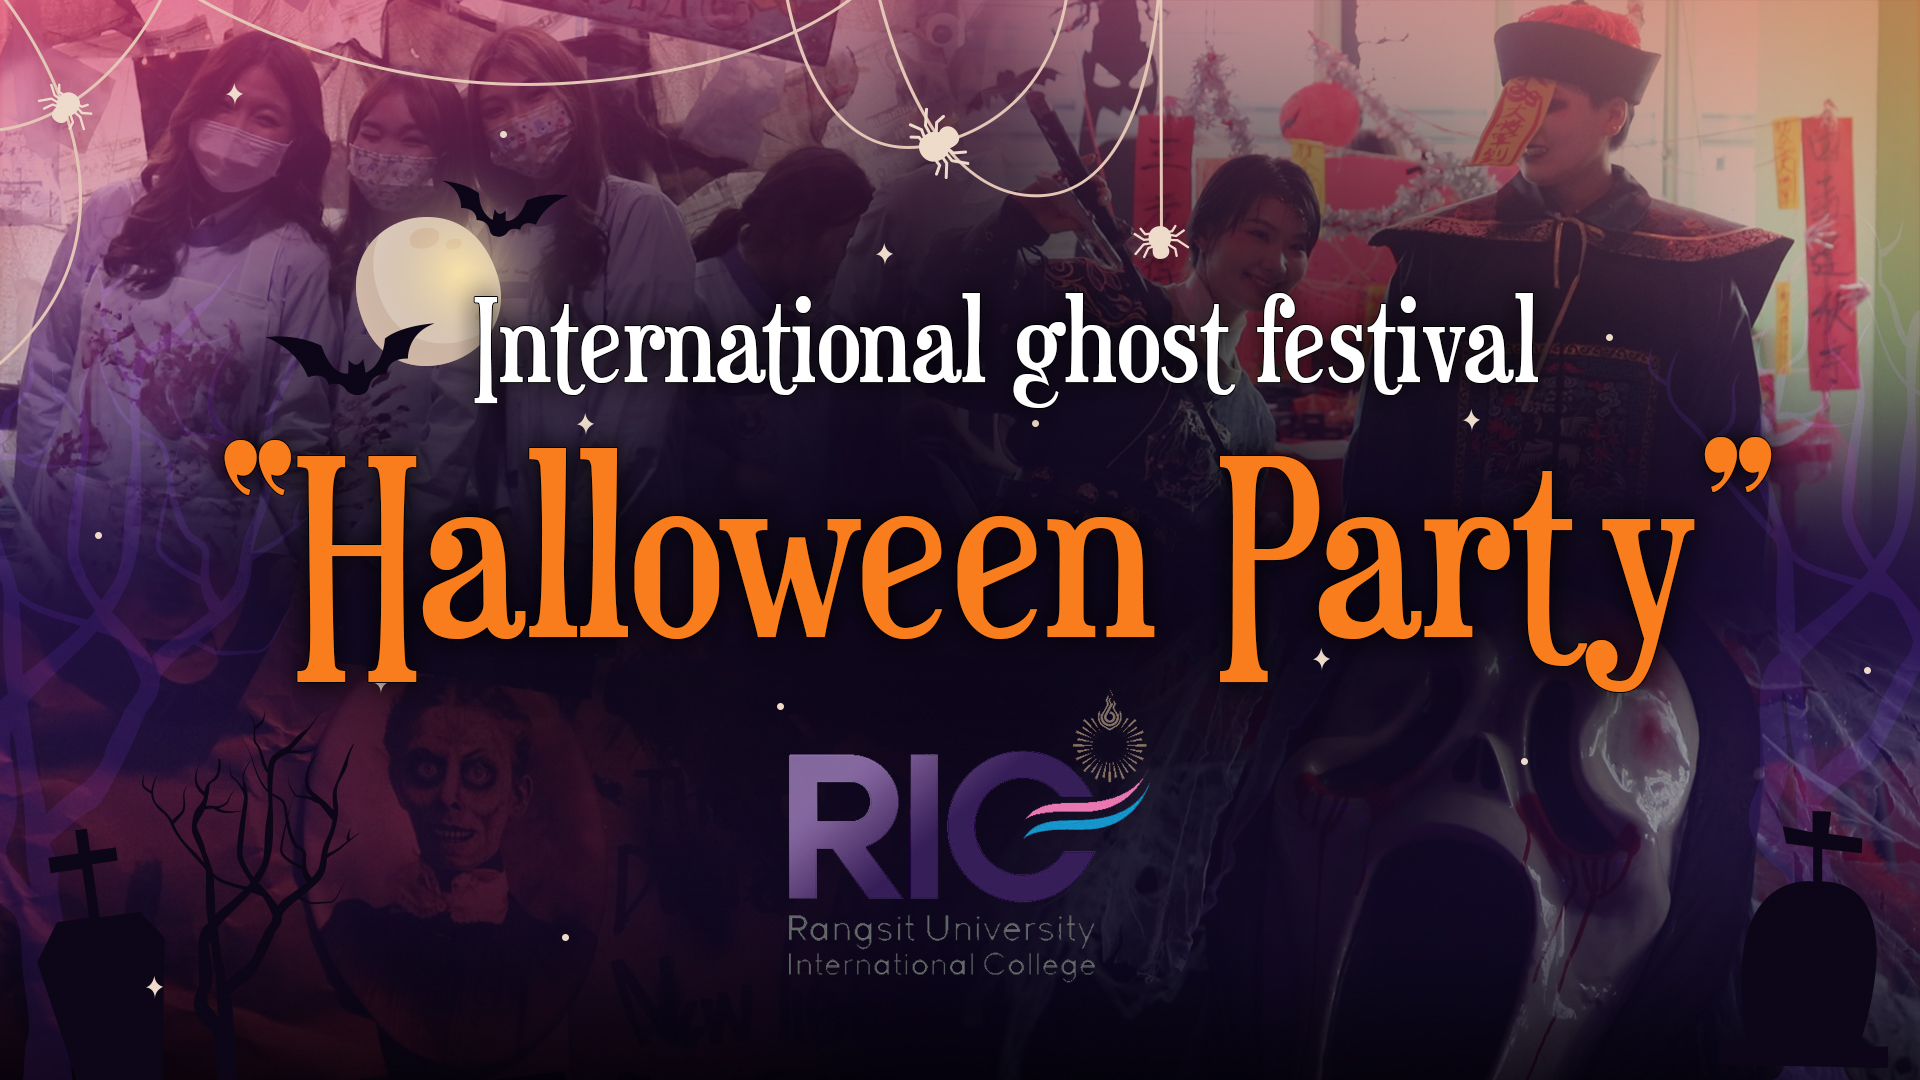 ว.นานาชาติ ม.รังสิต จัดงาน International ghost festival “Halloween party”